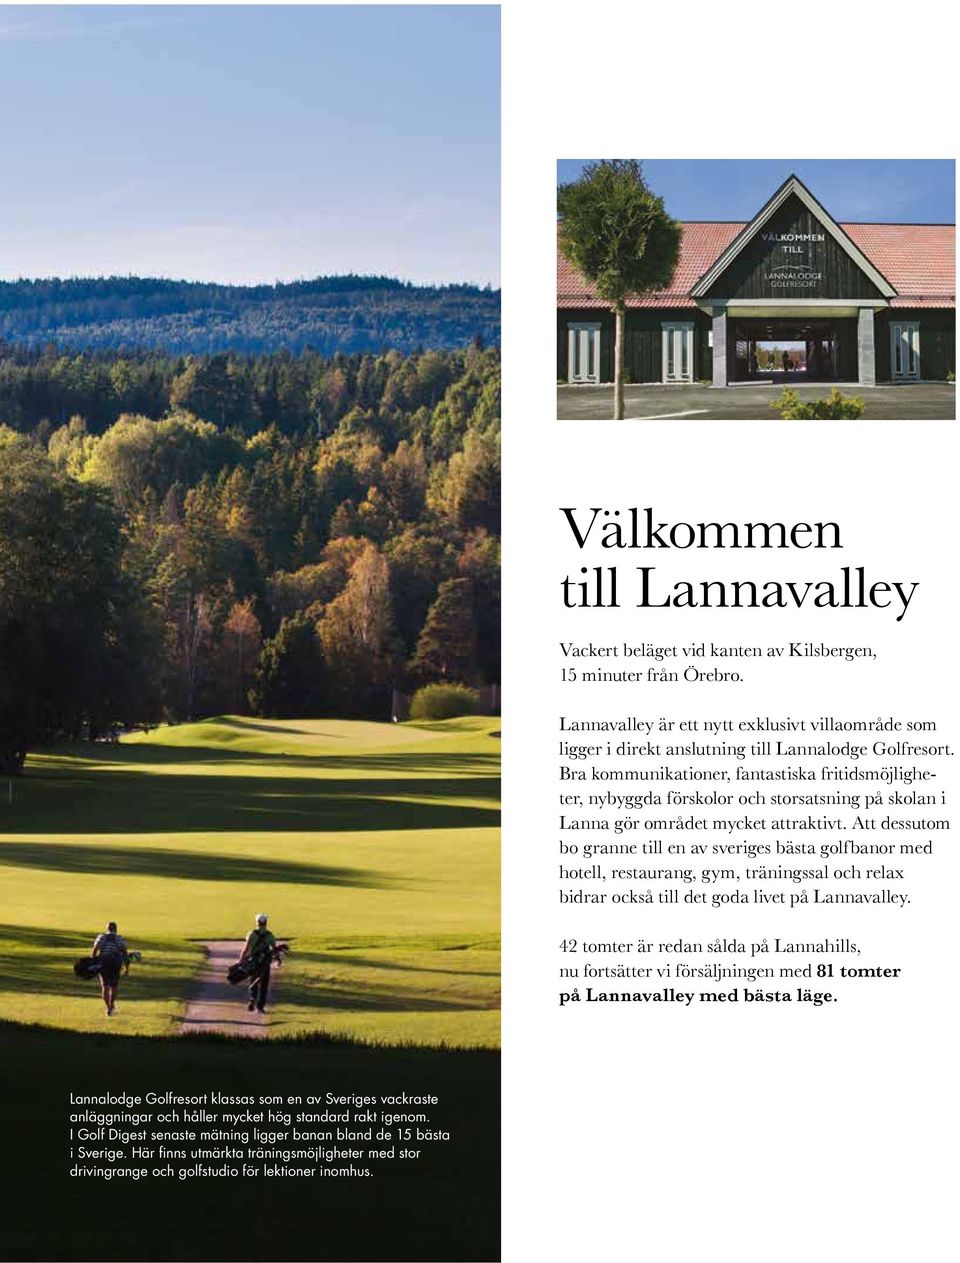 Att dessutom bo granne till en av sveriges bästa golfbanor med hotell, restaurang, gym, träningssal och relax bidrar också till det goda livet på Lannavalley.